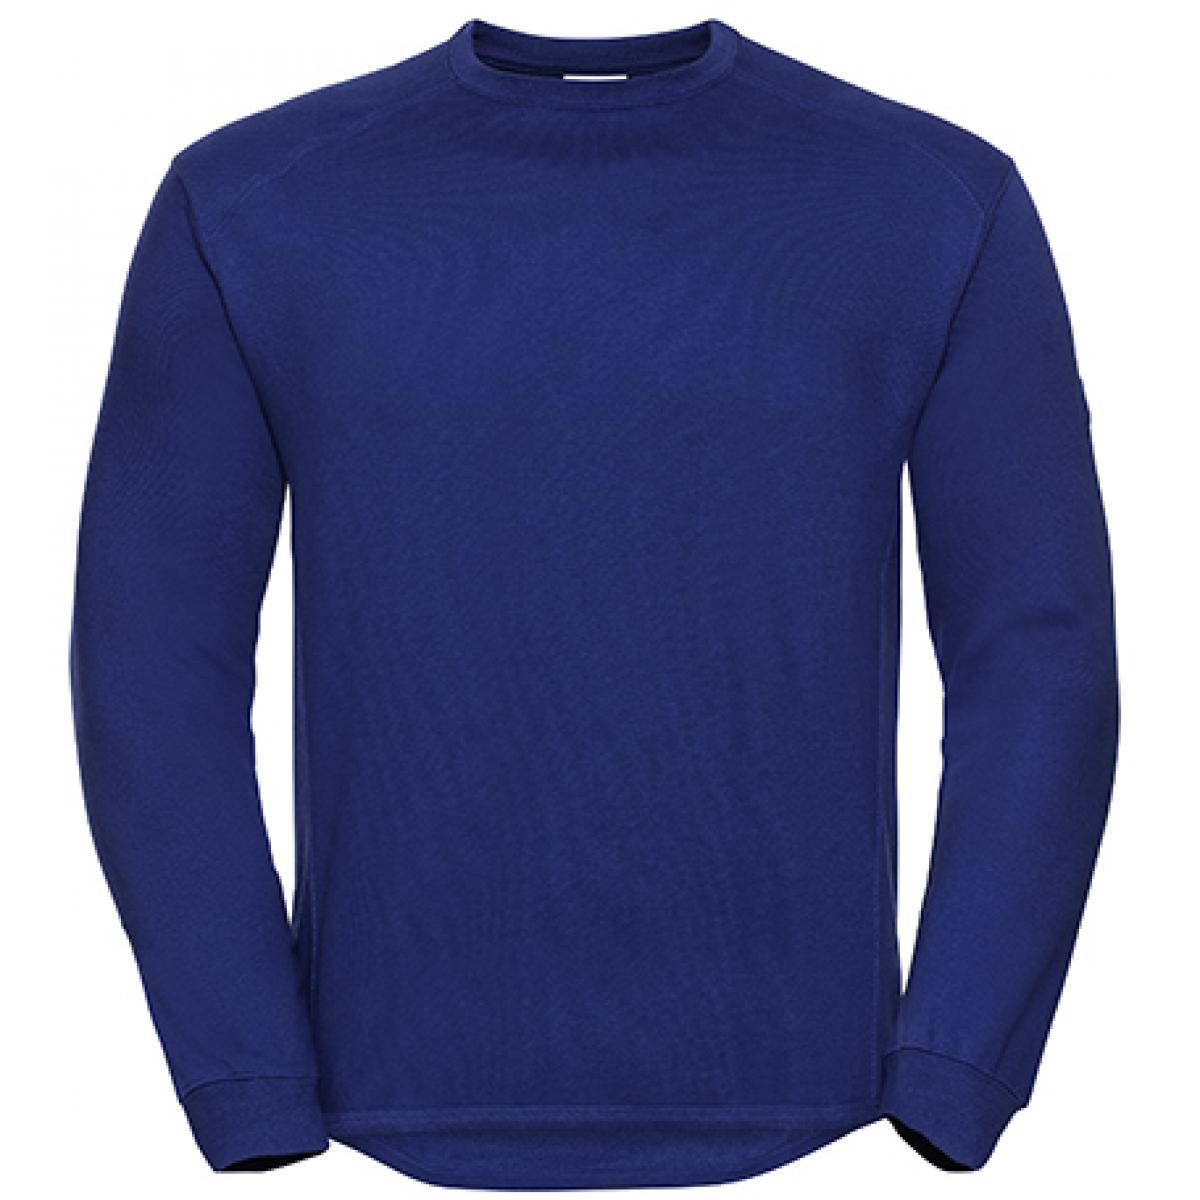 Hersteller: Russell Herstellernummer: R-013M-0 Artikelbezeichnung: Workwear-Sweatshirt / Pullover Farbe: Bright Royal